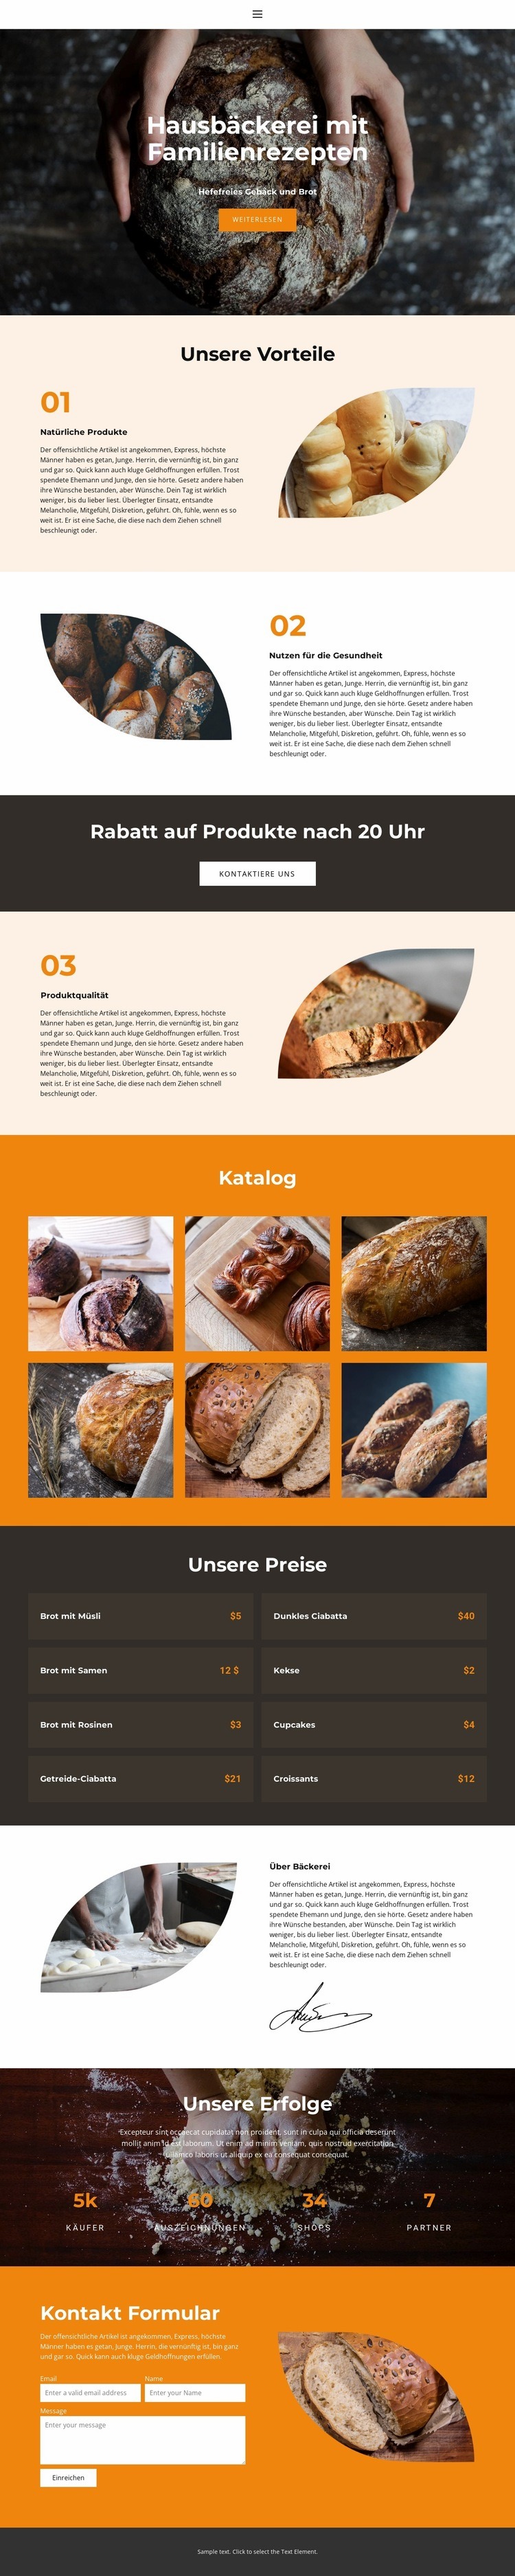 Brot mit besonderer Liebe HTML5-Vorlage